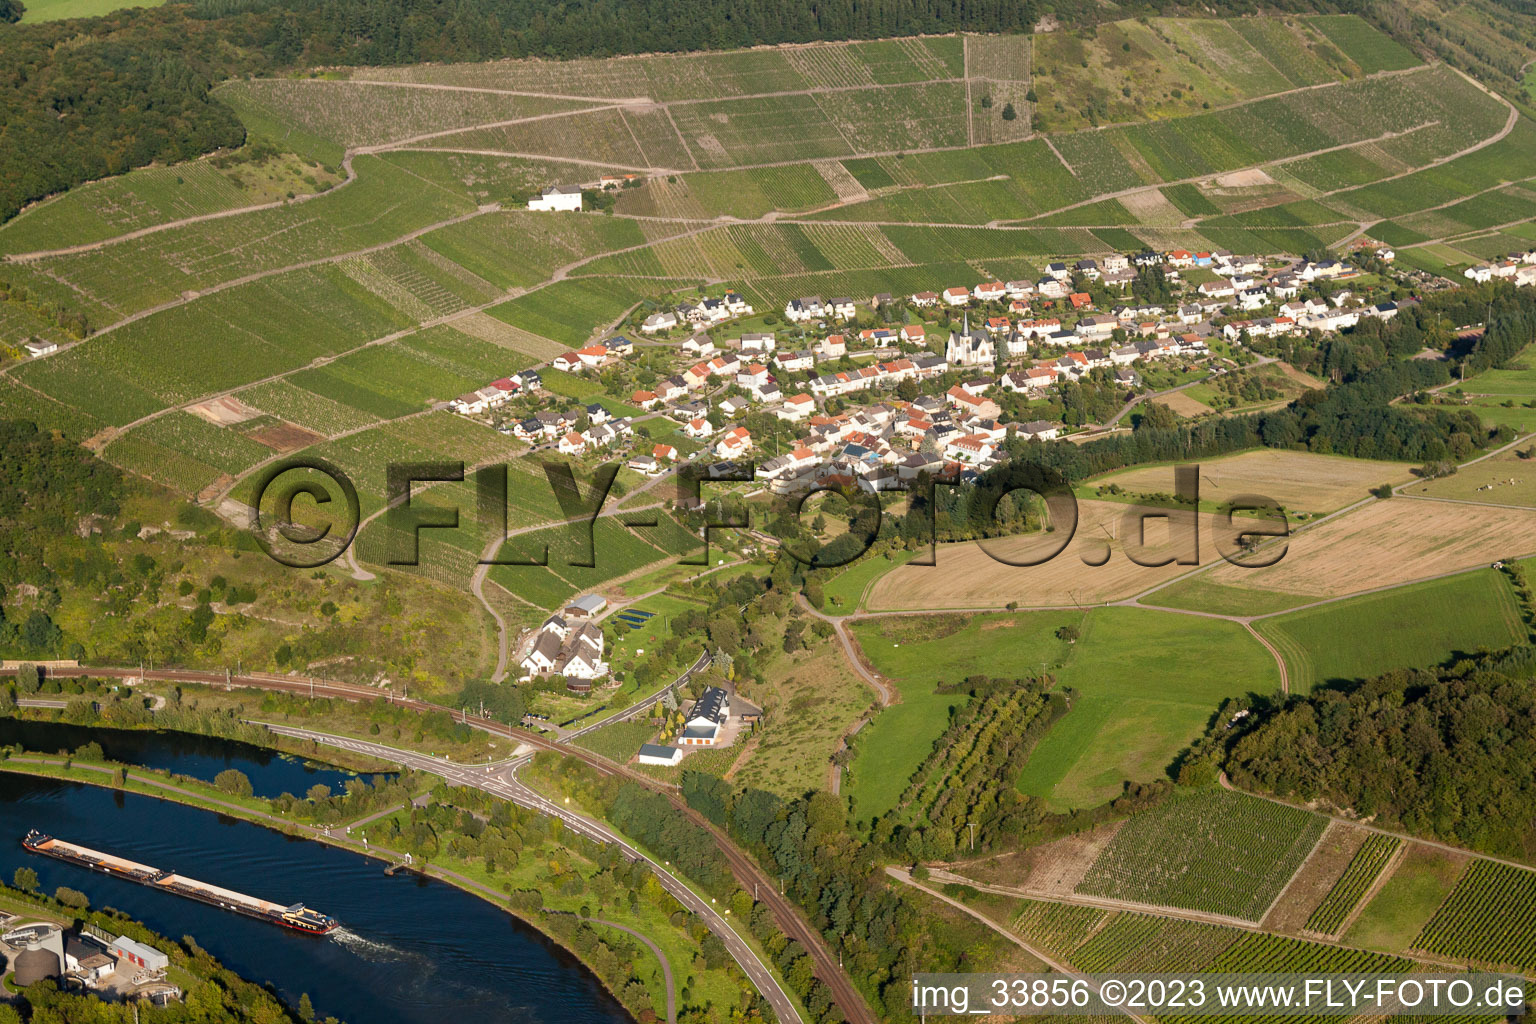 Aerial view of Niederleuken in the state Rhineland-Palatinate, Germany